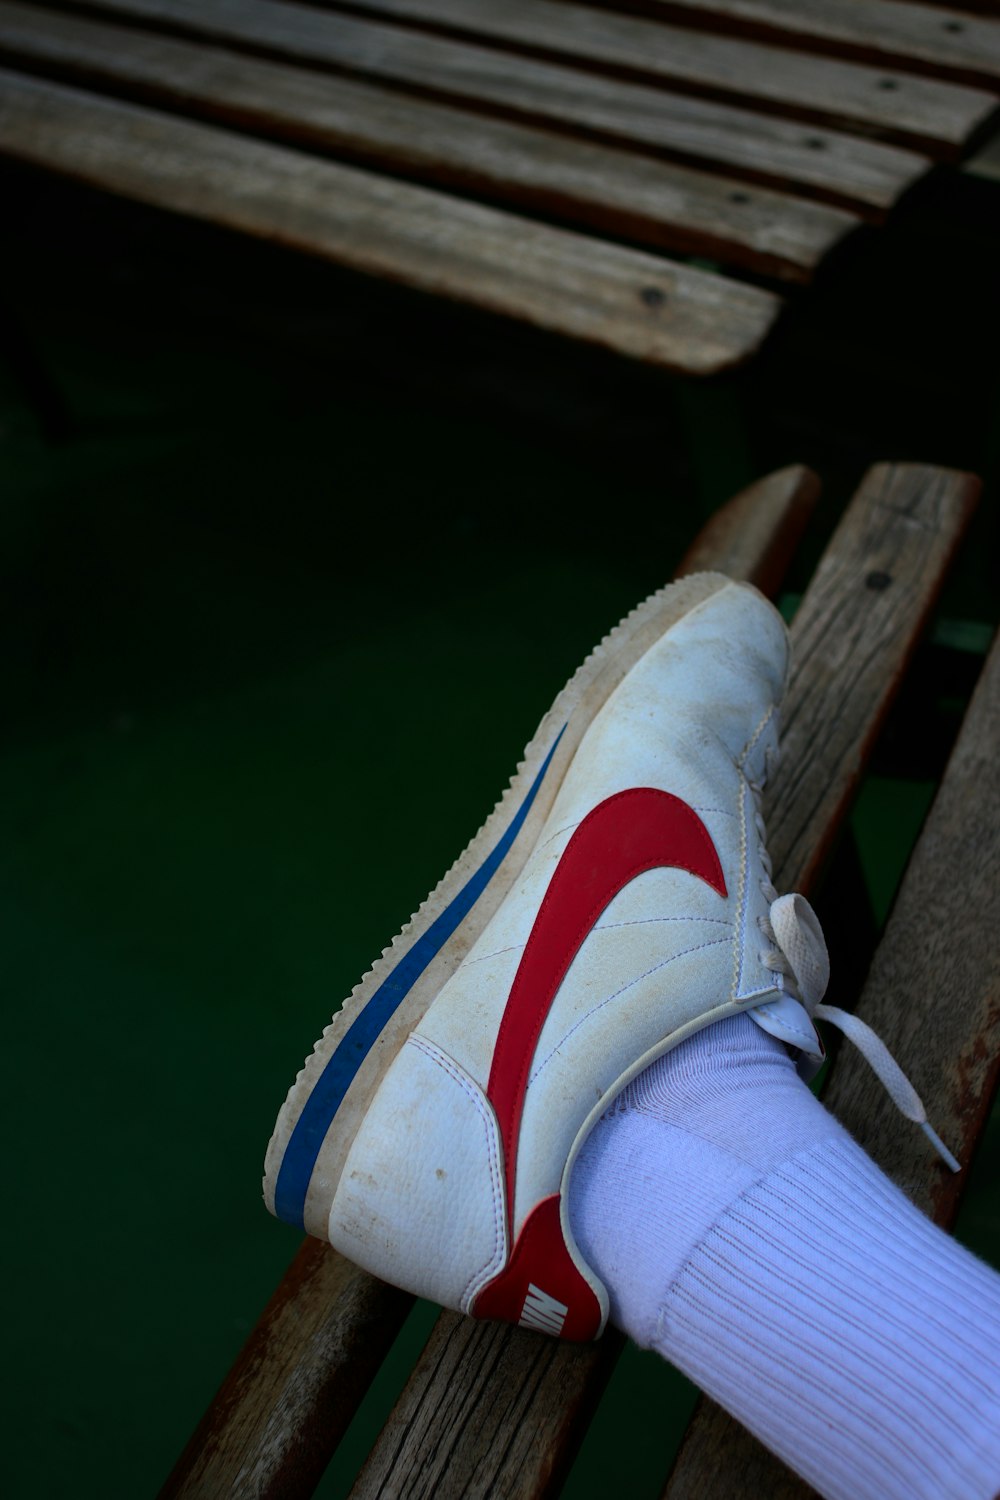 personne portant du blanc et du rouge avec des baskets Nike bleues